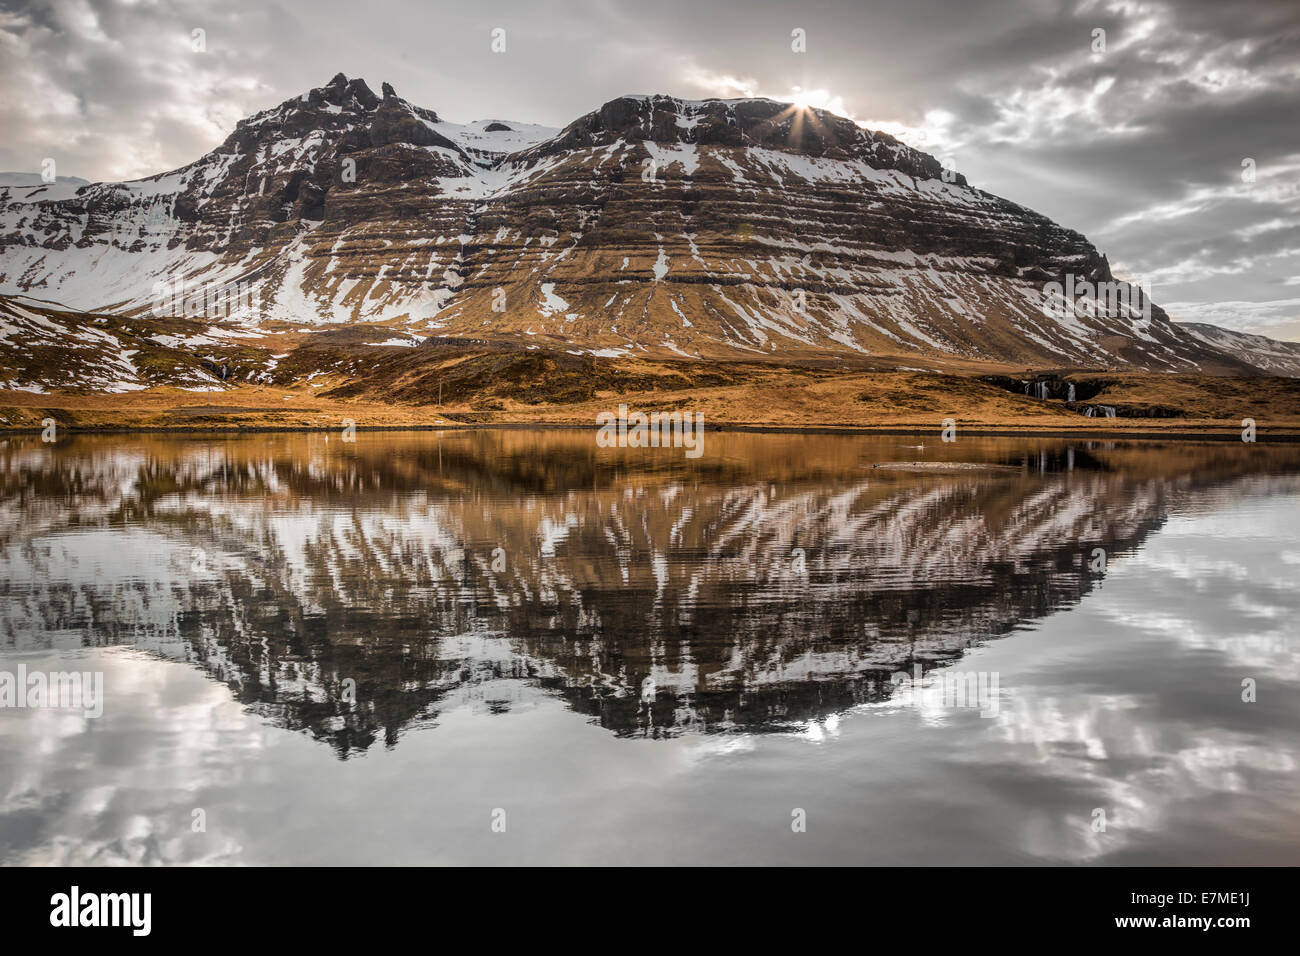 Las montañas de la costa Grundarfjordur reflejado en la bahía en un día nublado, la península de Snaefellsnes, en el oeste de Islandia. Foto de stock